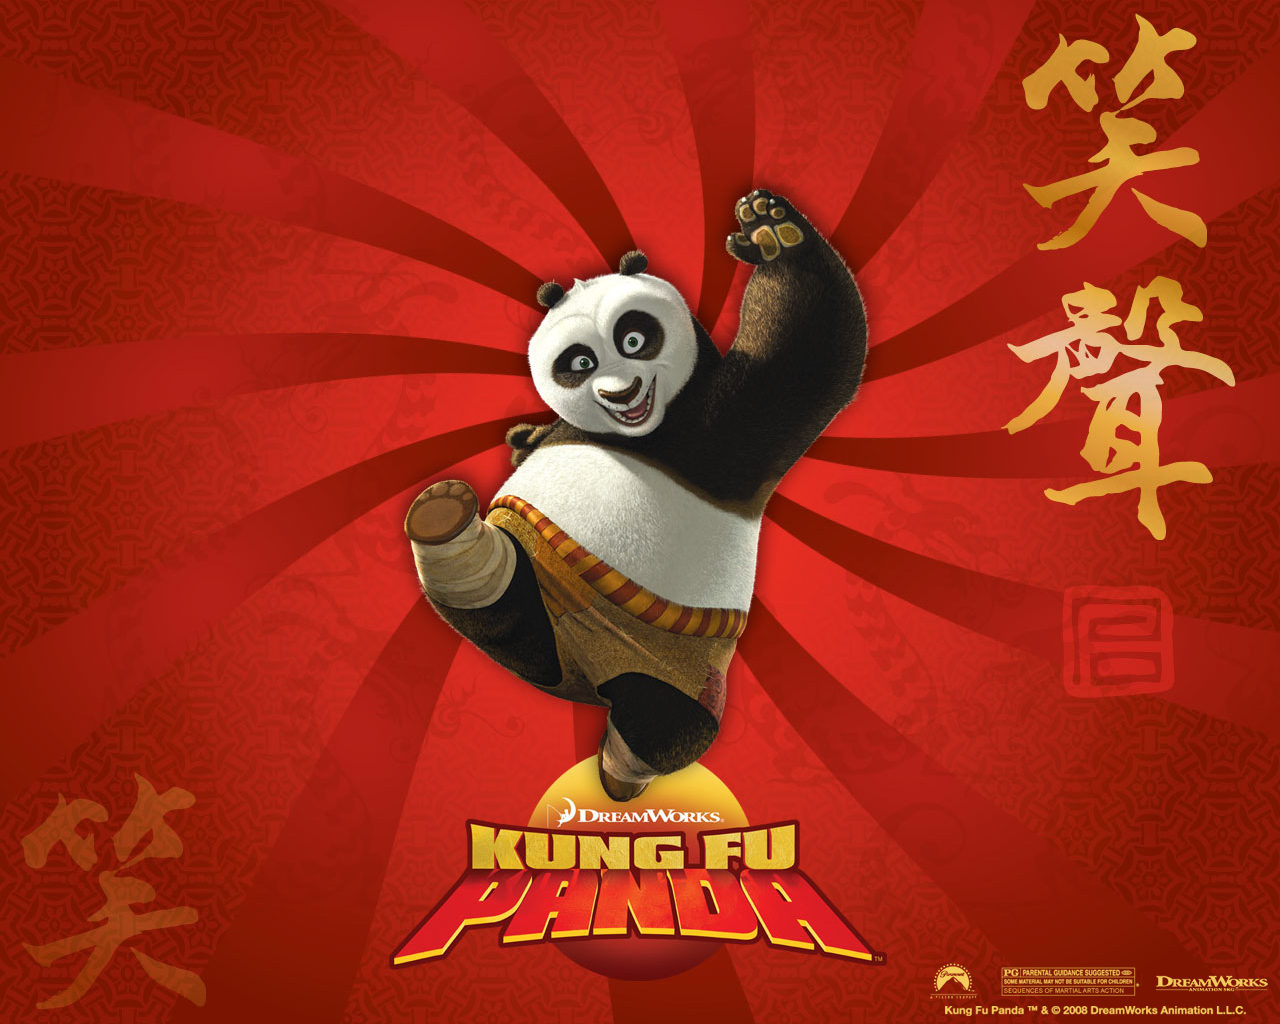 Gấu trúc Po tiếp tục cuốn người xem qua Kung Fu Panda 3  Phim chiếu rạp